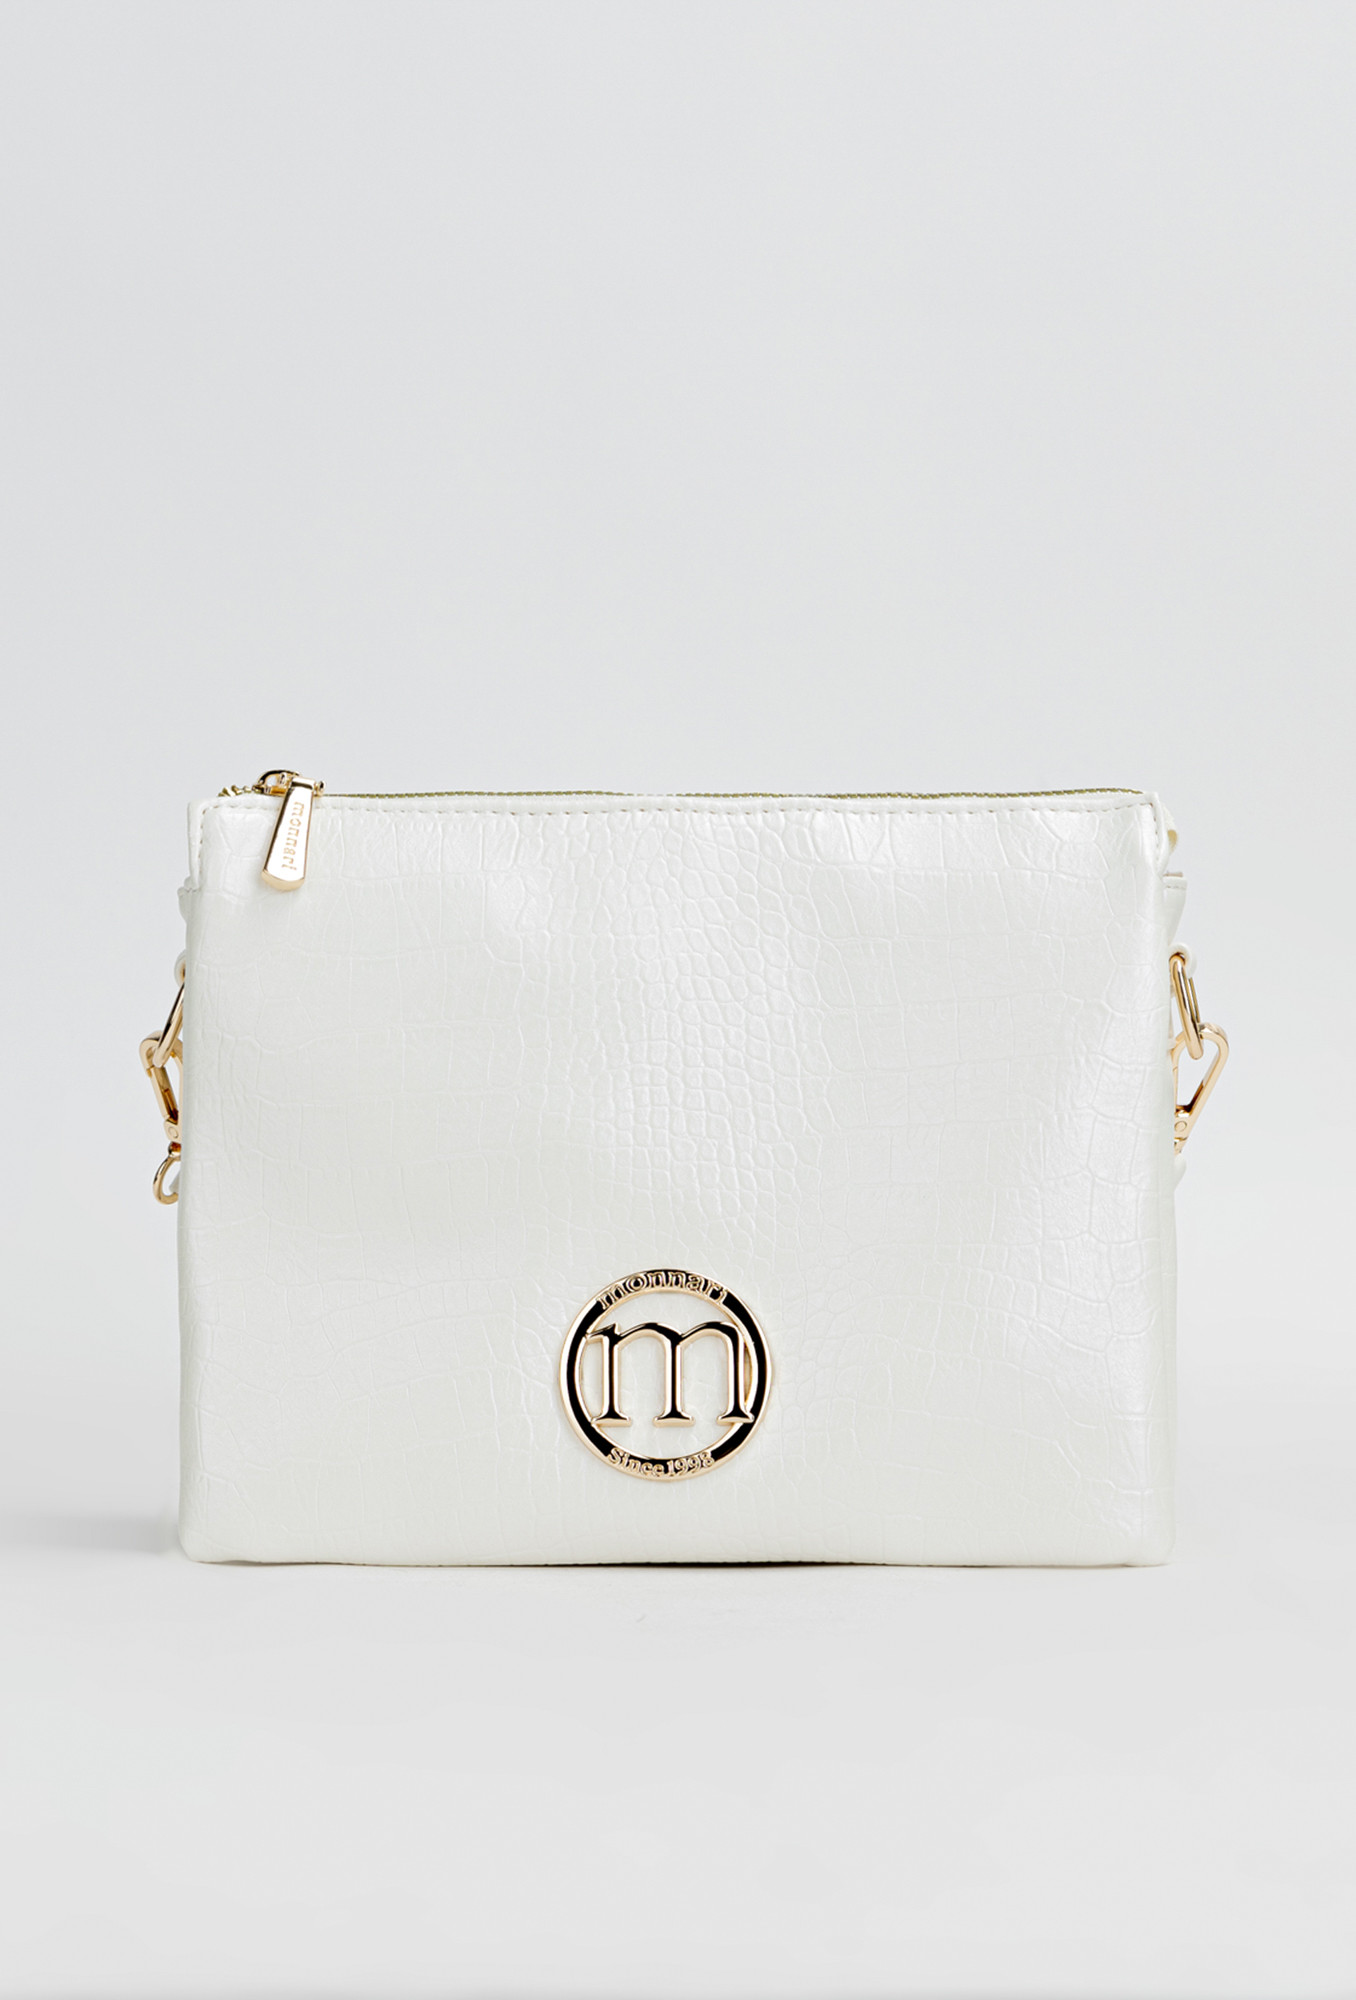 Monnari Bags Dámská kabelka s logem značky Monnari White OS